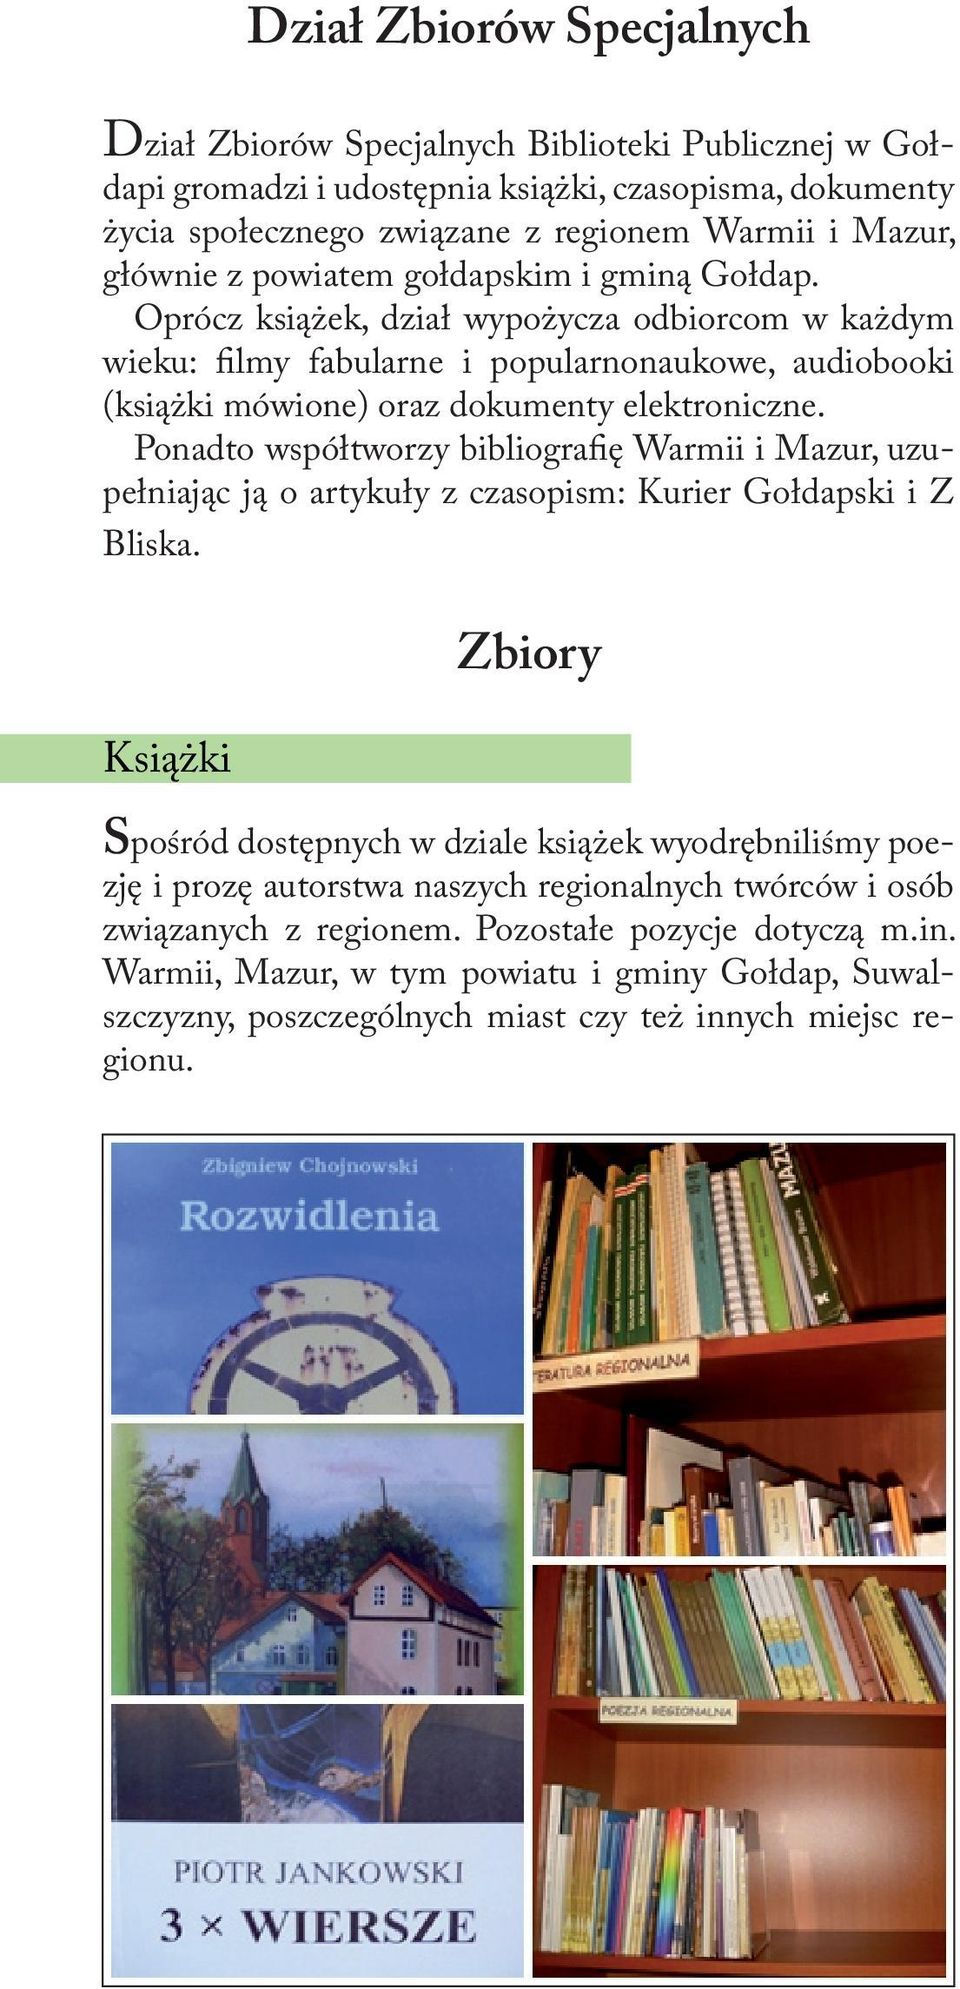 Ponadto współtworzy bibliografię Warmii i Mazur, uzupełniając ją o artykuły z czasopism: Kurier Gołdapski i Z Bliska.